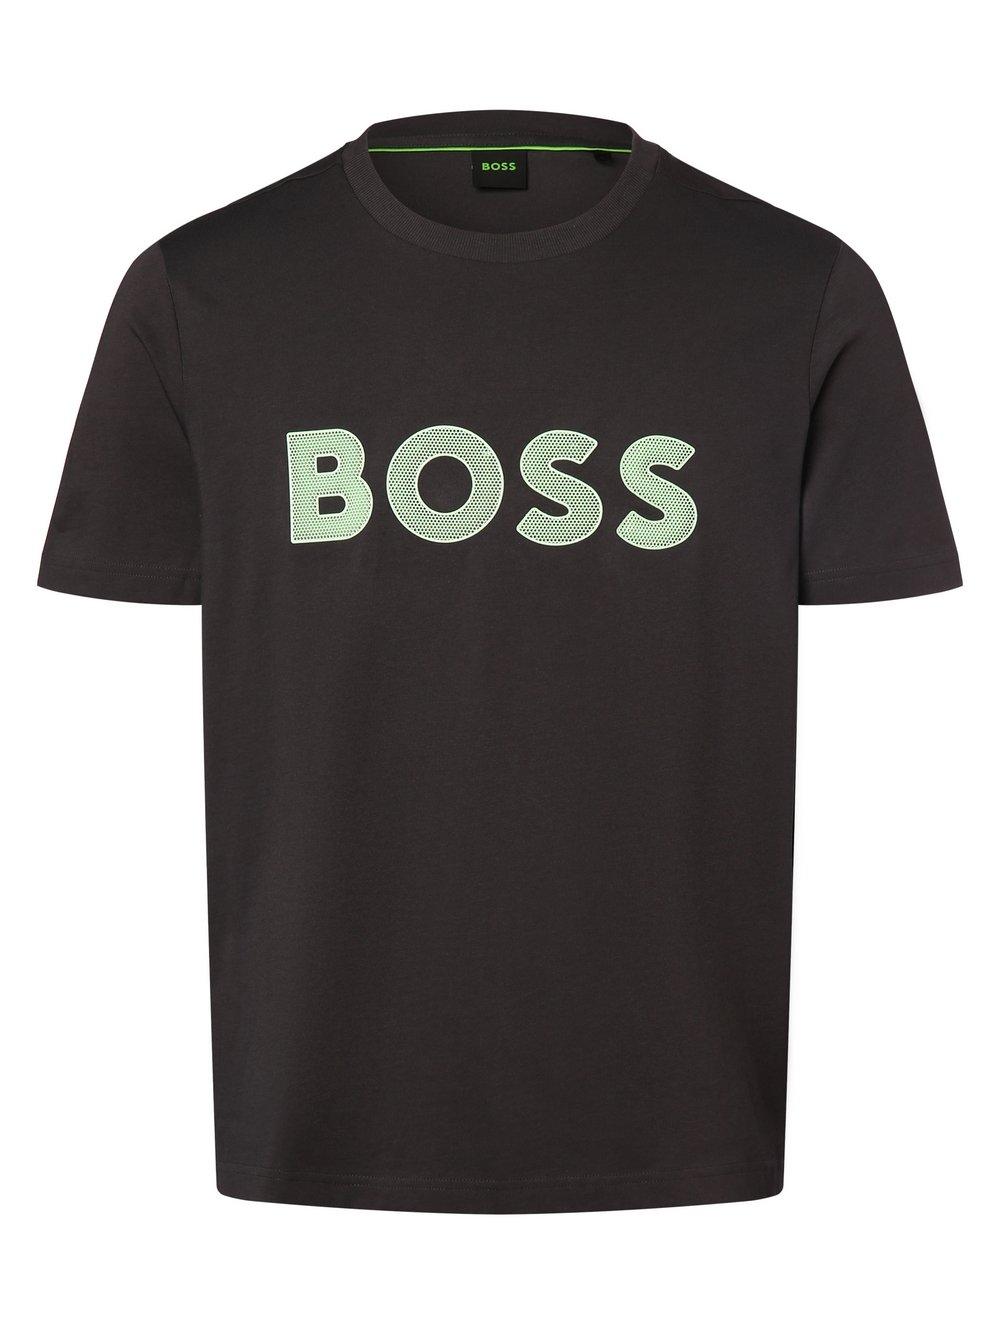 BOSS Green T-Shirt Herren Baumwolle Rundhals bedruckt, anthrazit von BOSS Green